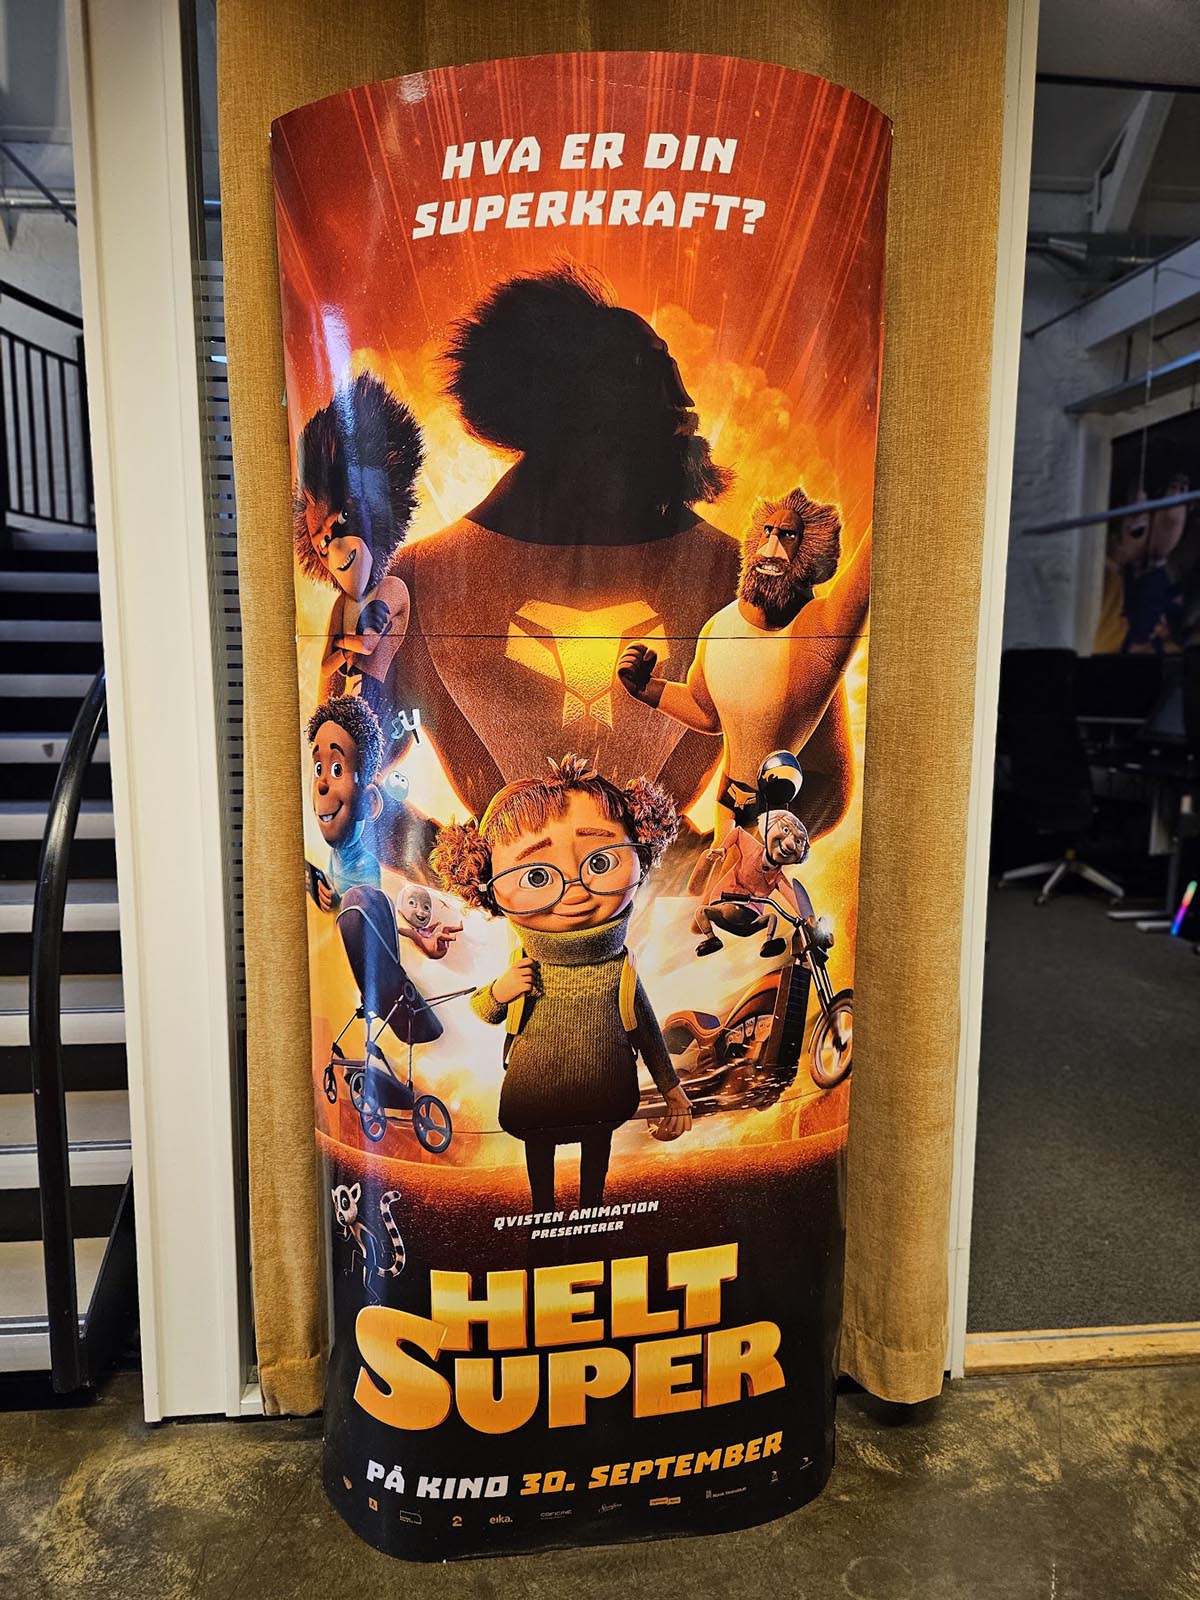 Poster from Qvisten Animation's <em>Just Super</em> (original title <em>Helt Super</em>), released in 2022.